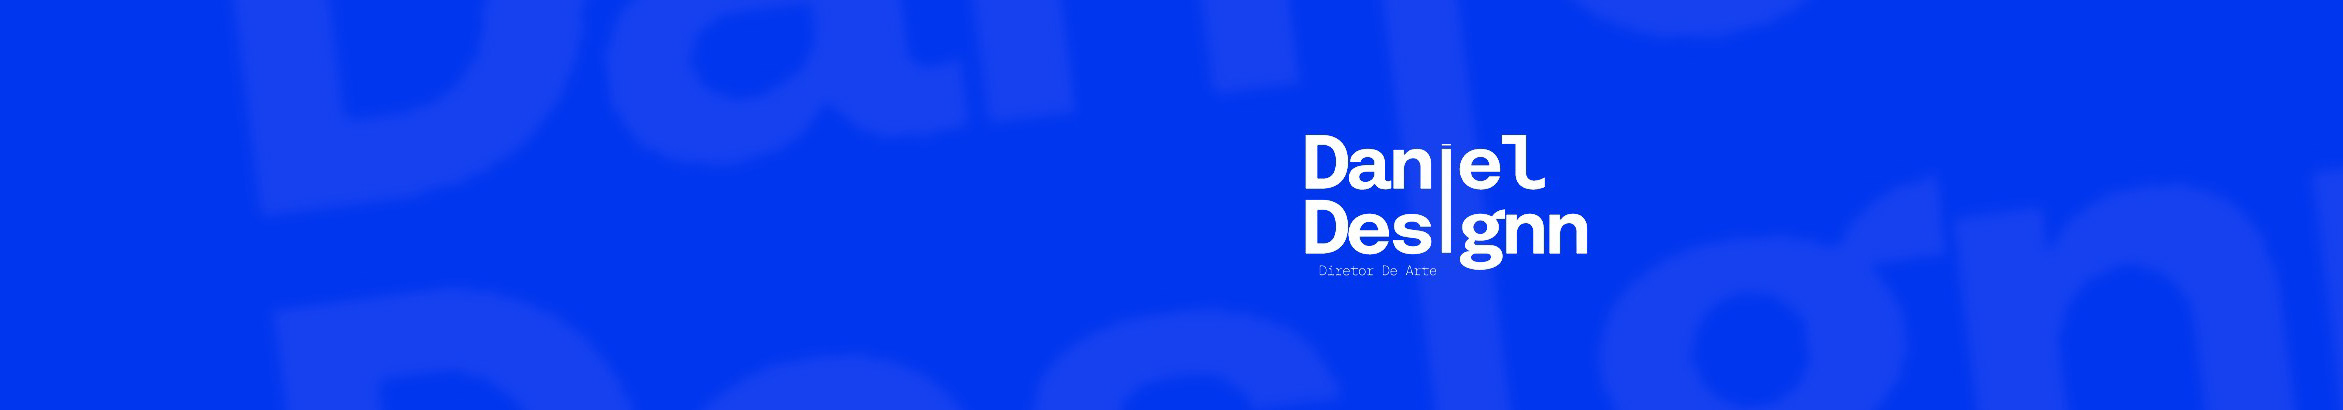 Bannière de profil de Daniel Designn